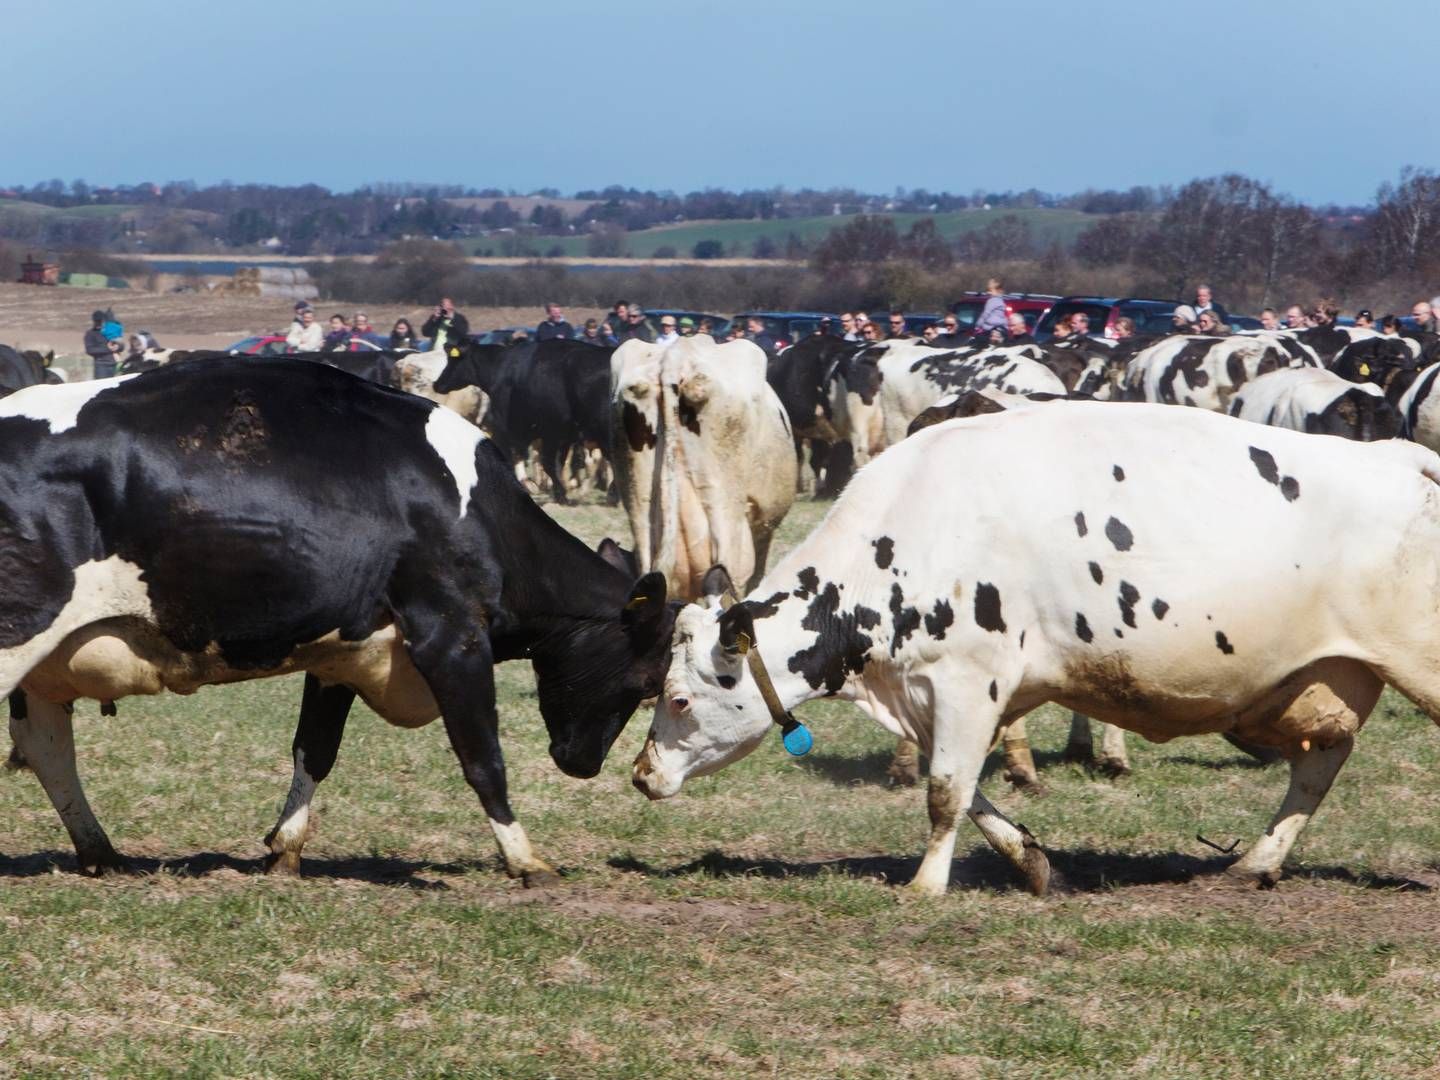 Økologiske mælkeproducenter slår de konventionelle bønder på indtjeningen, viser regnskabsgennemgang | Foto: Stine Bidstrup